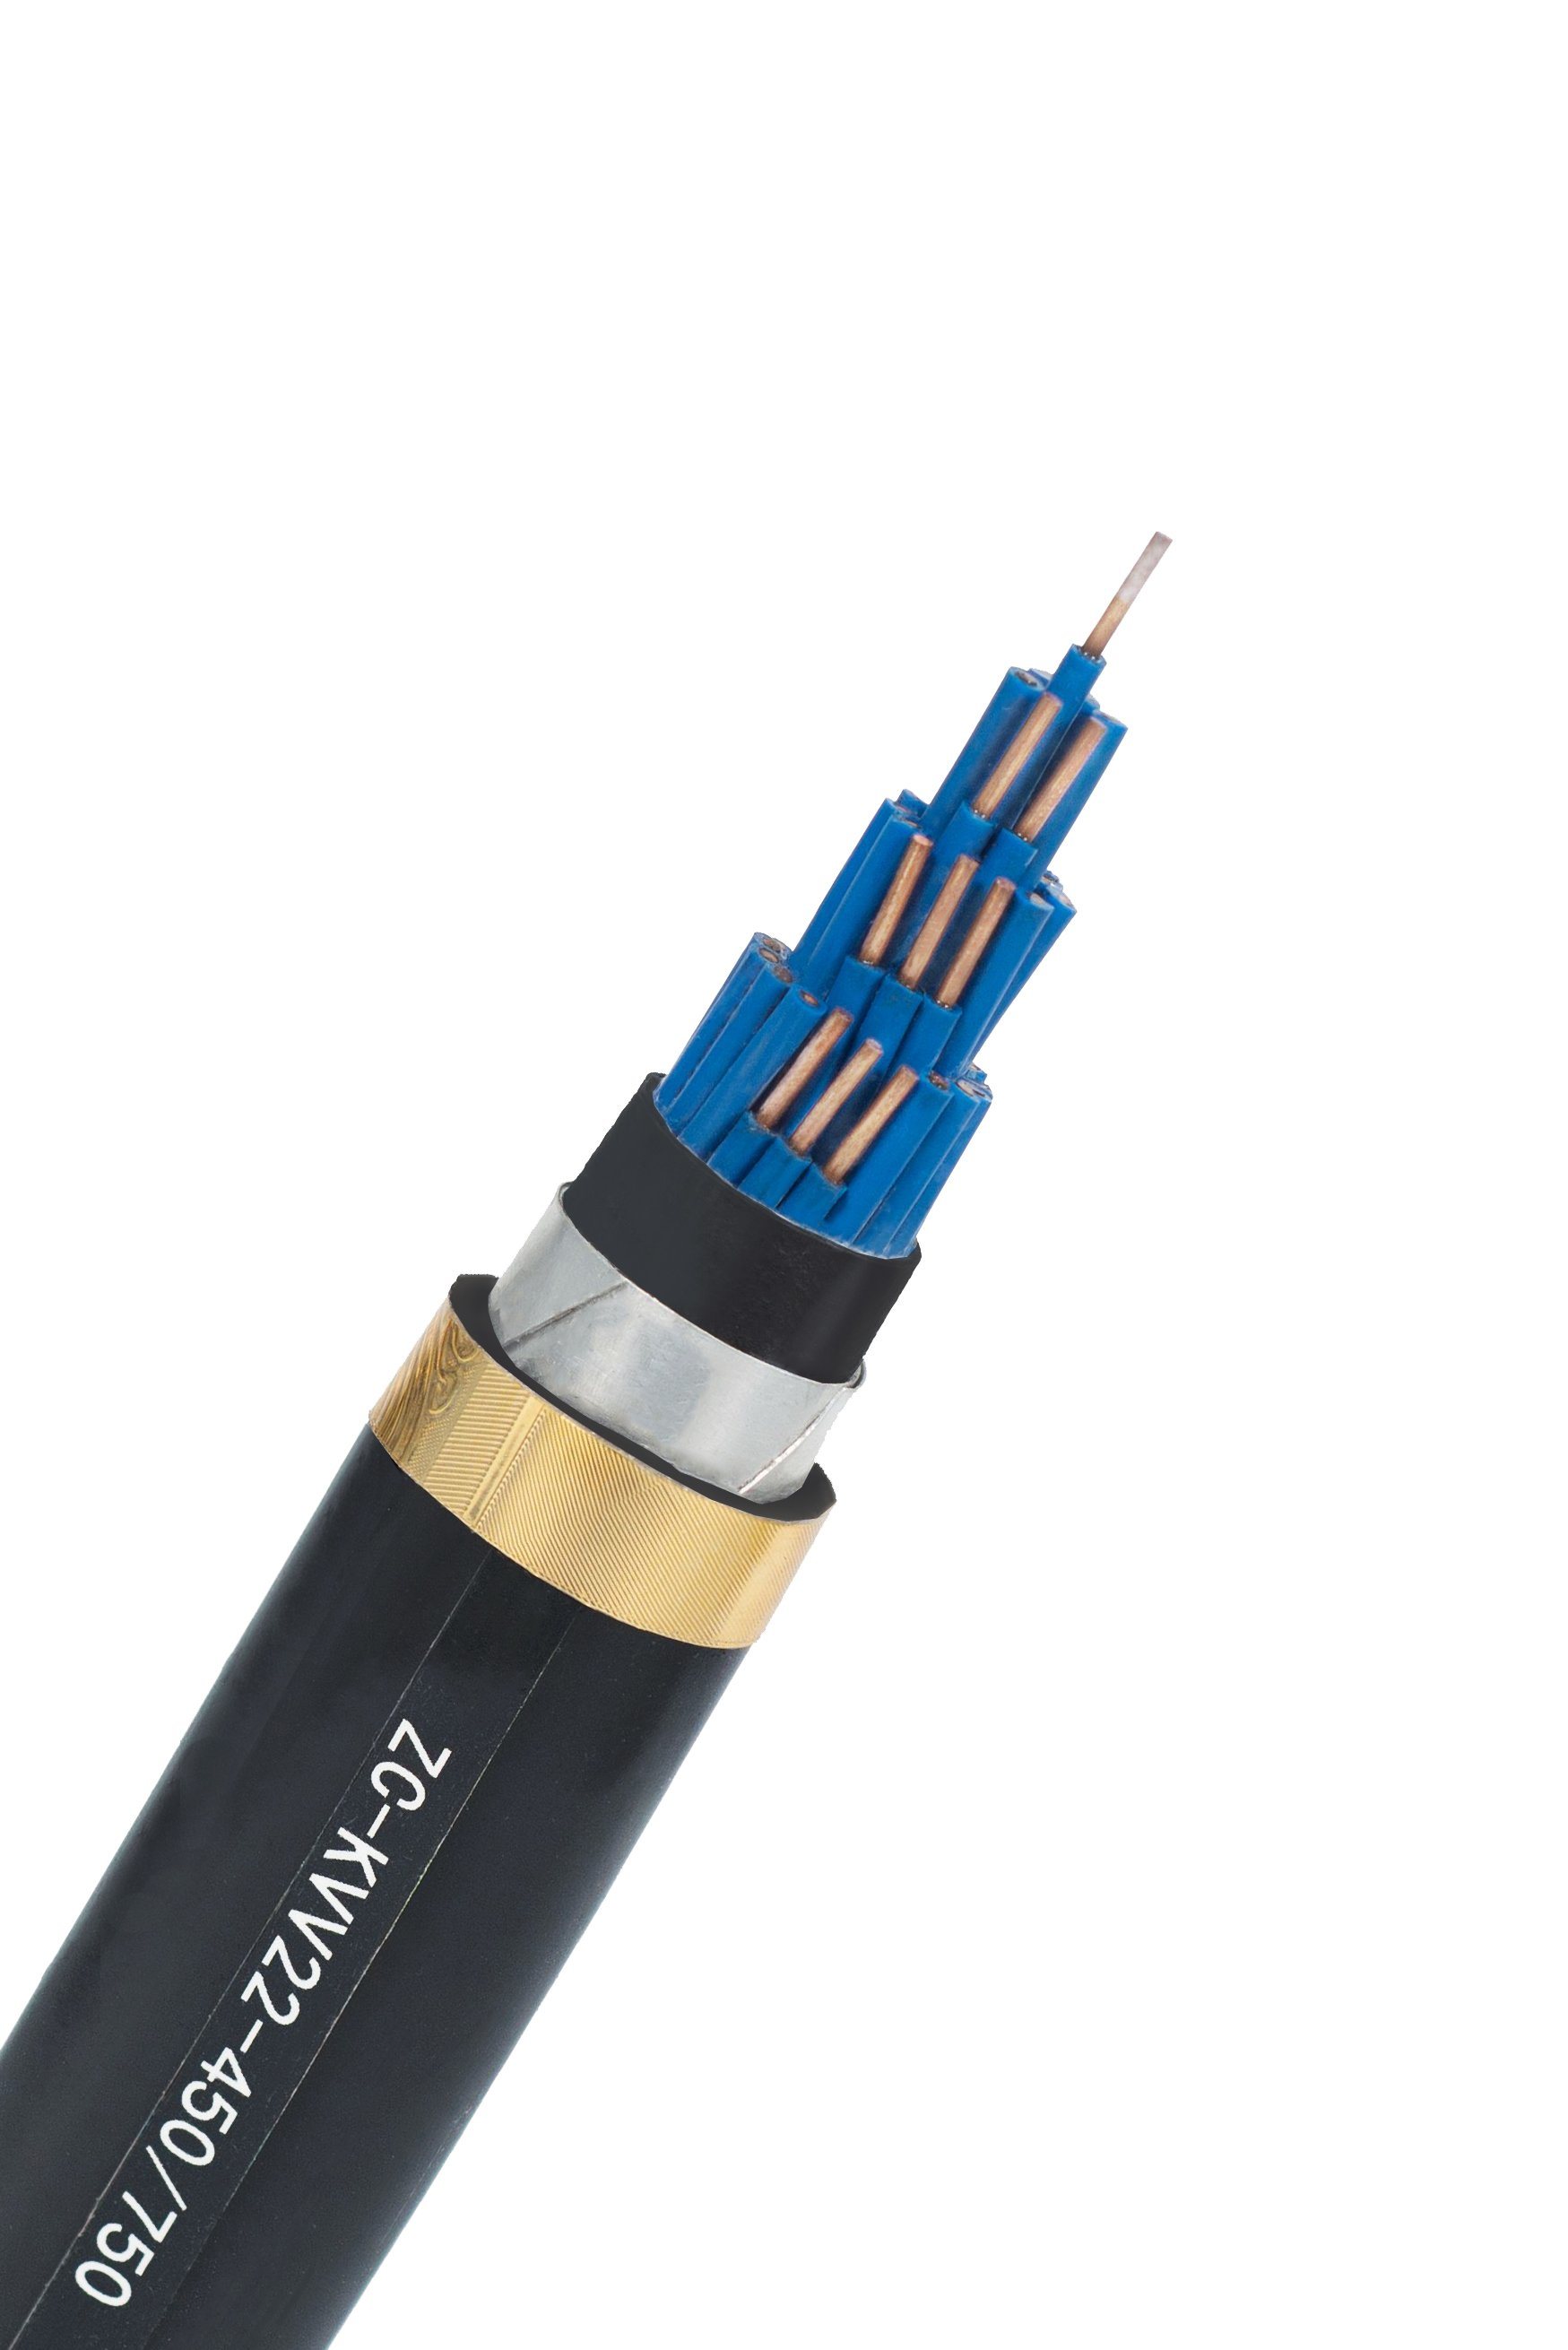 
                Venta caliente recubierto de PVC cintas de acero blindado de cinta de cobre del cable de mando blindado Kvvp2-22 / Cable Eléctrico Cable con buen precio.
            